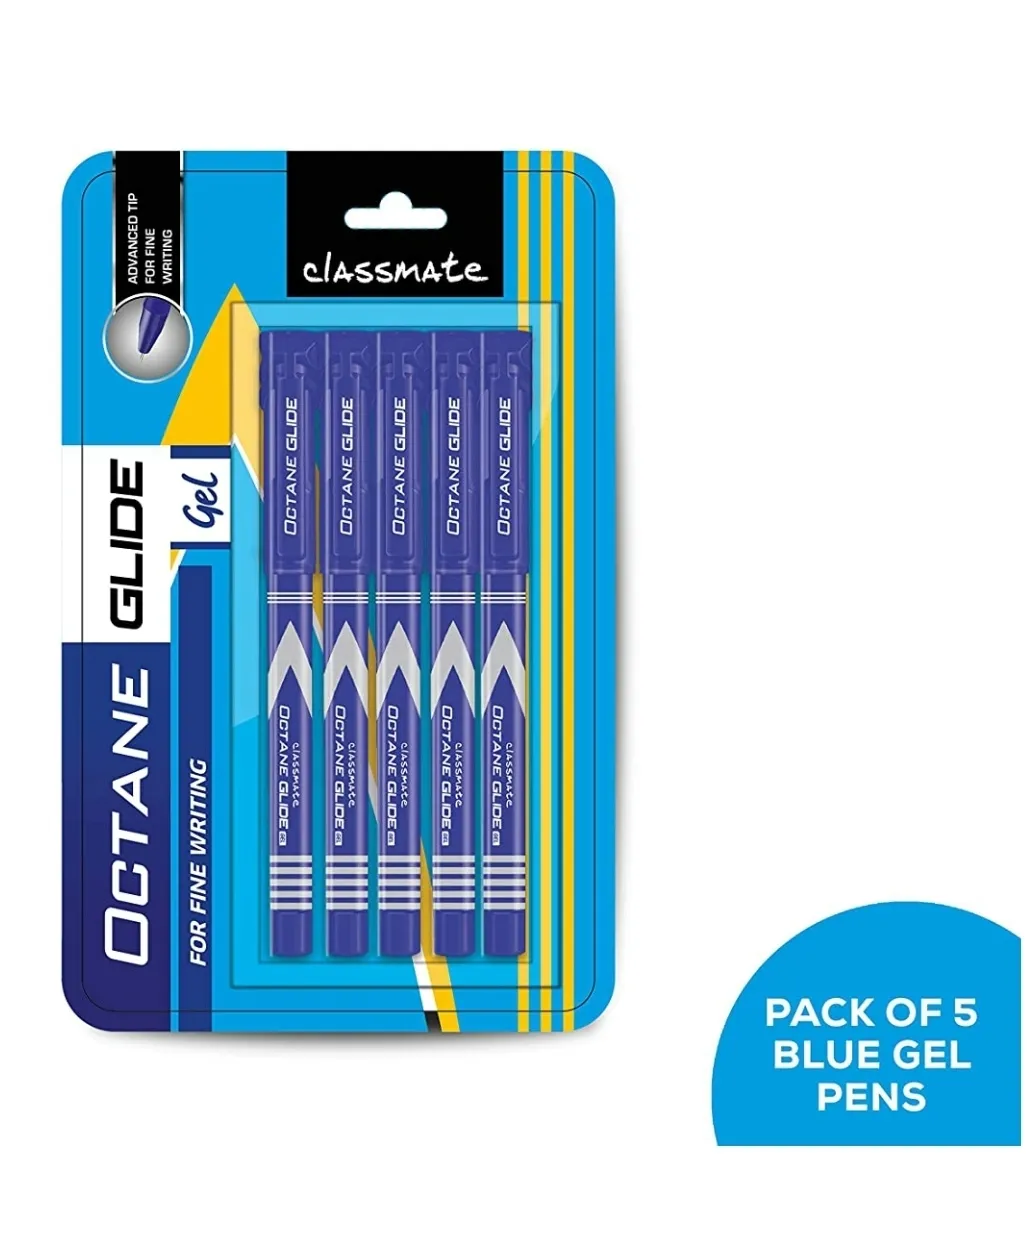 Classmate Octane Glide Gel- Blue Pen, Pack of 5 pens, Blister Pack